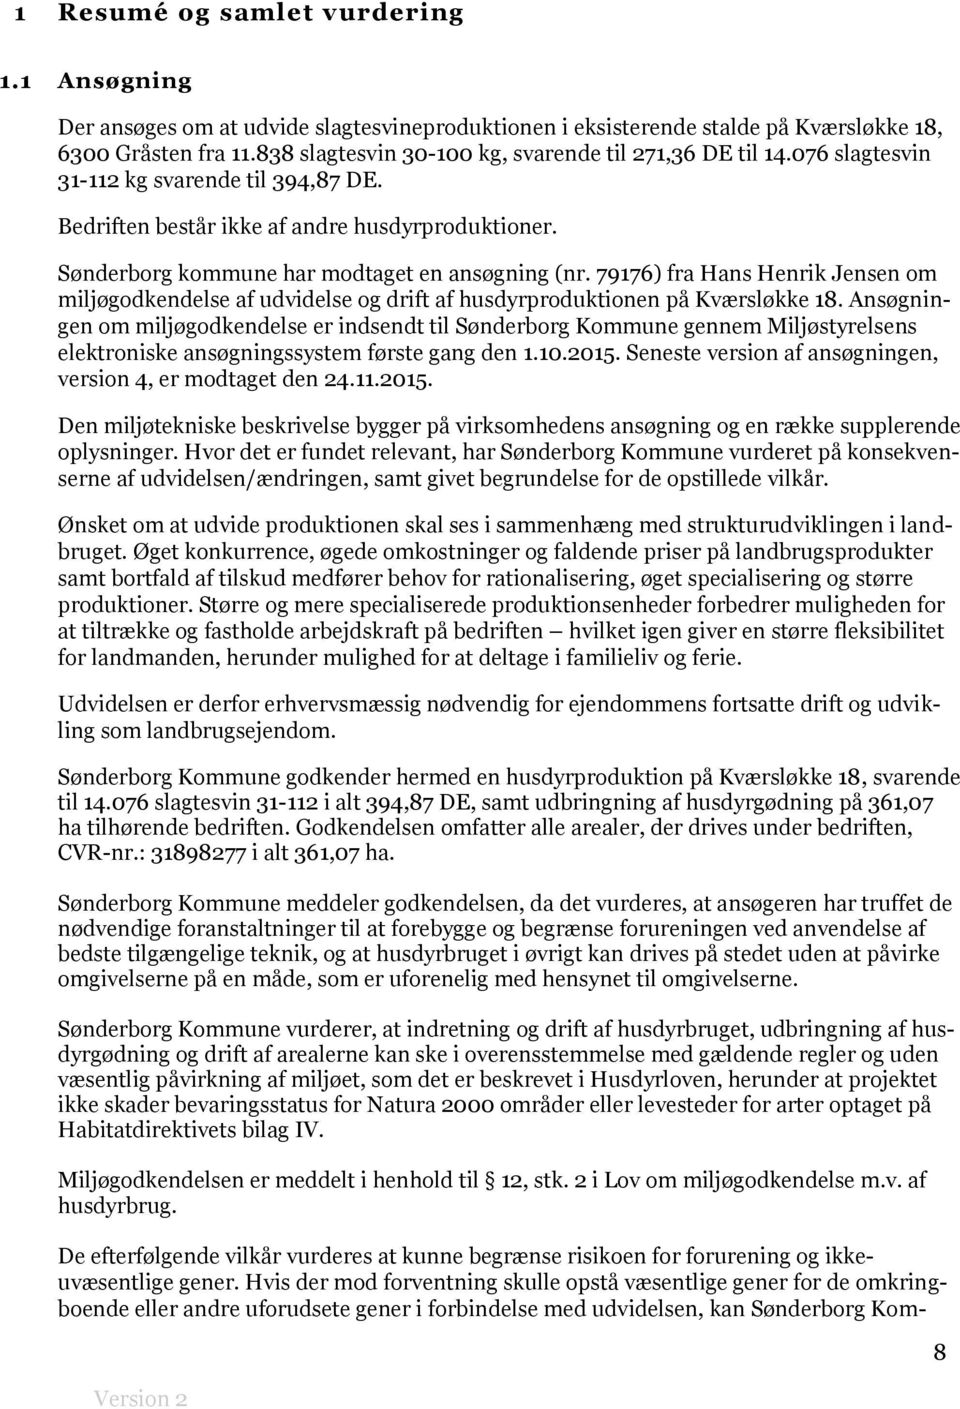 Sønderborg kommune har modtaget en ansøgning (nr. 79176) fra Hans Henrik Jensen om miljøgodkendelse af udvidelse og drift af husdyrproduktionen på Kværsløkke 18.